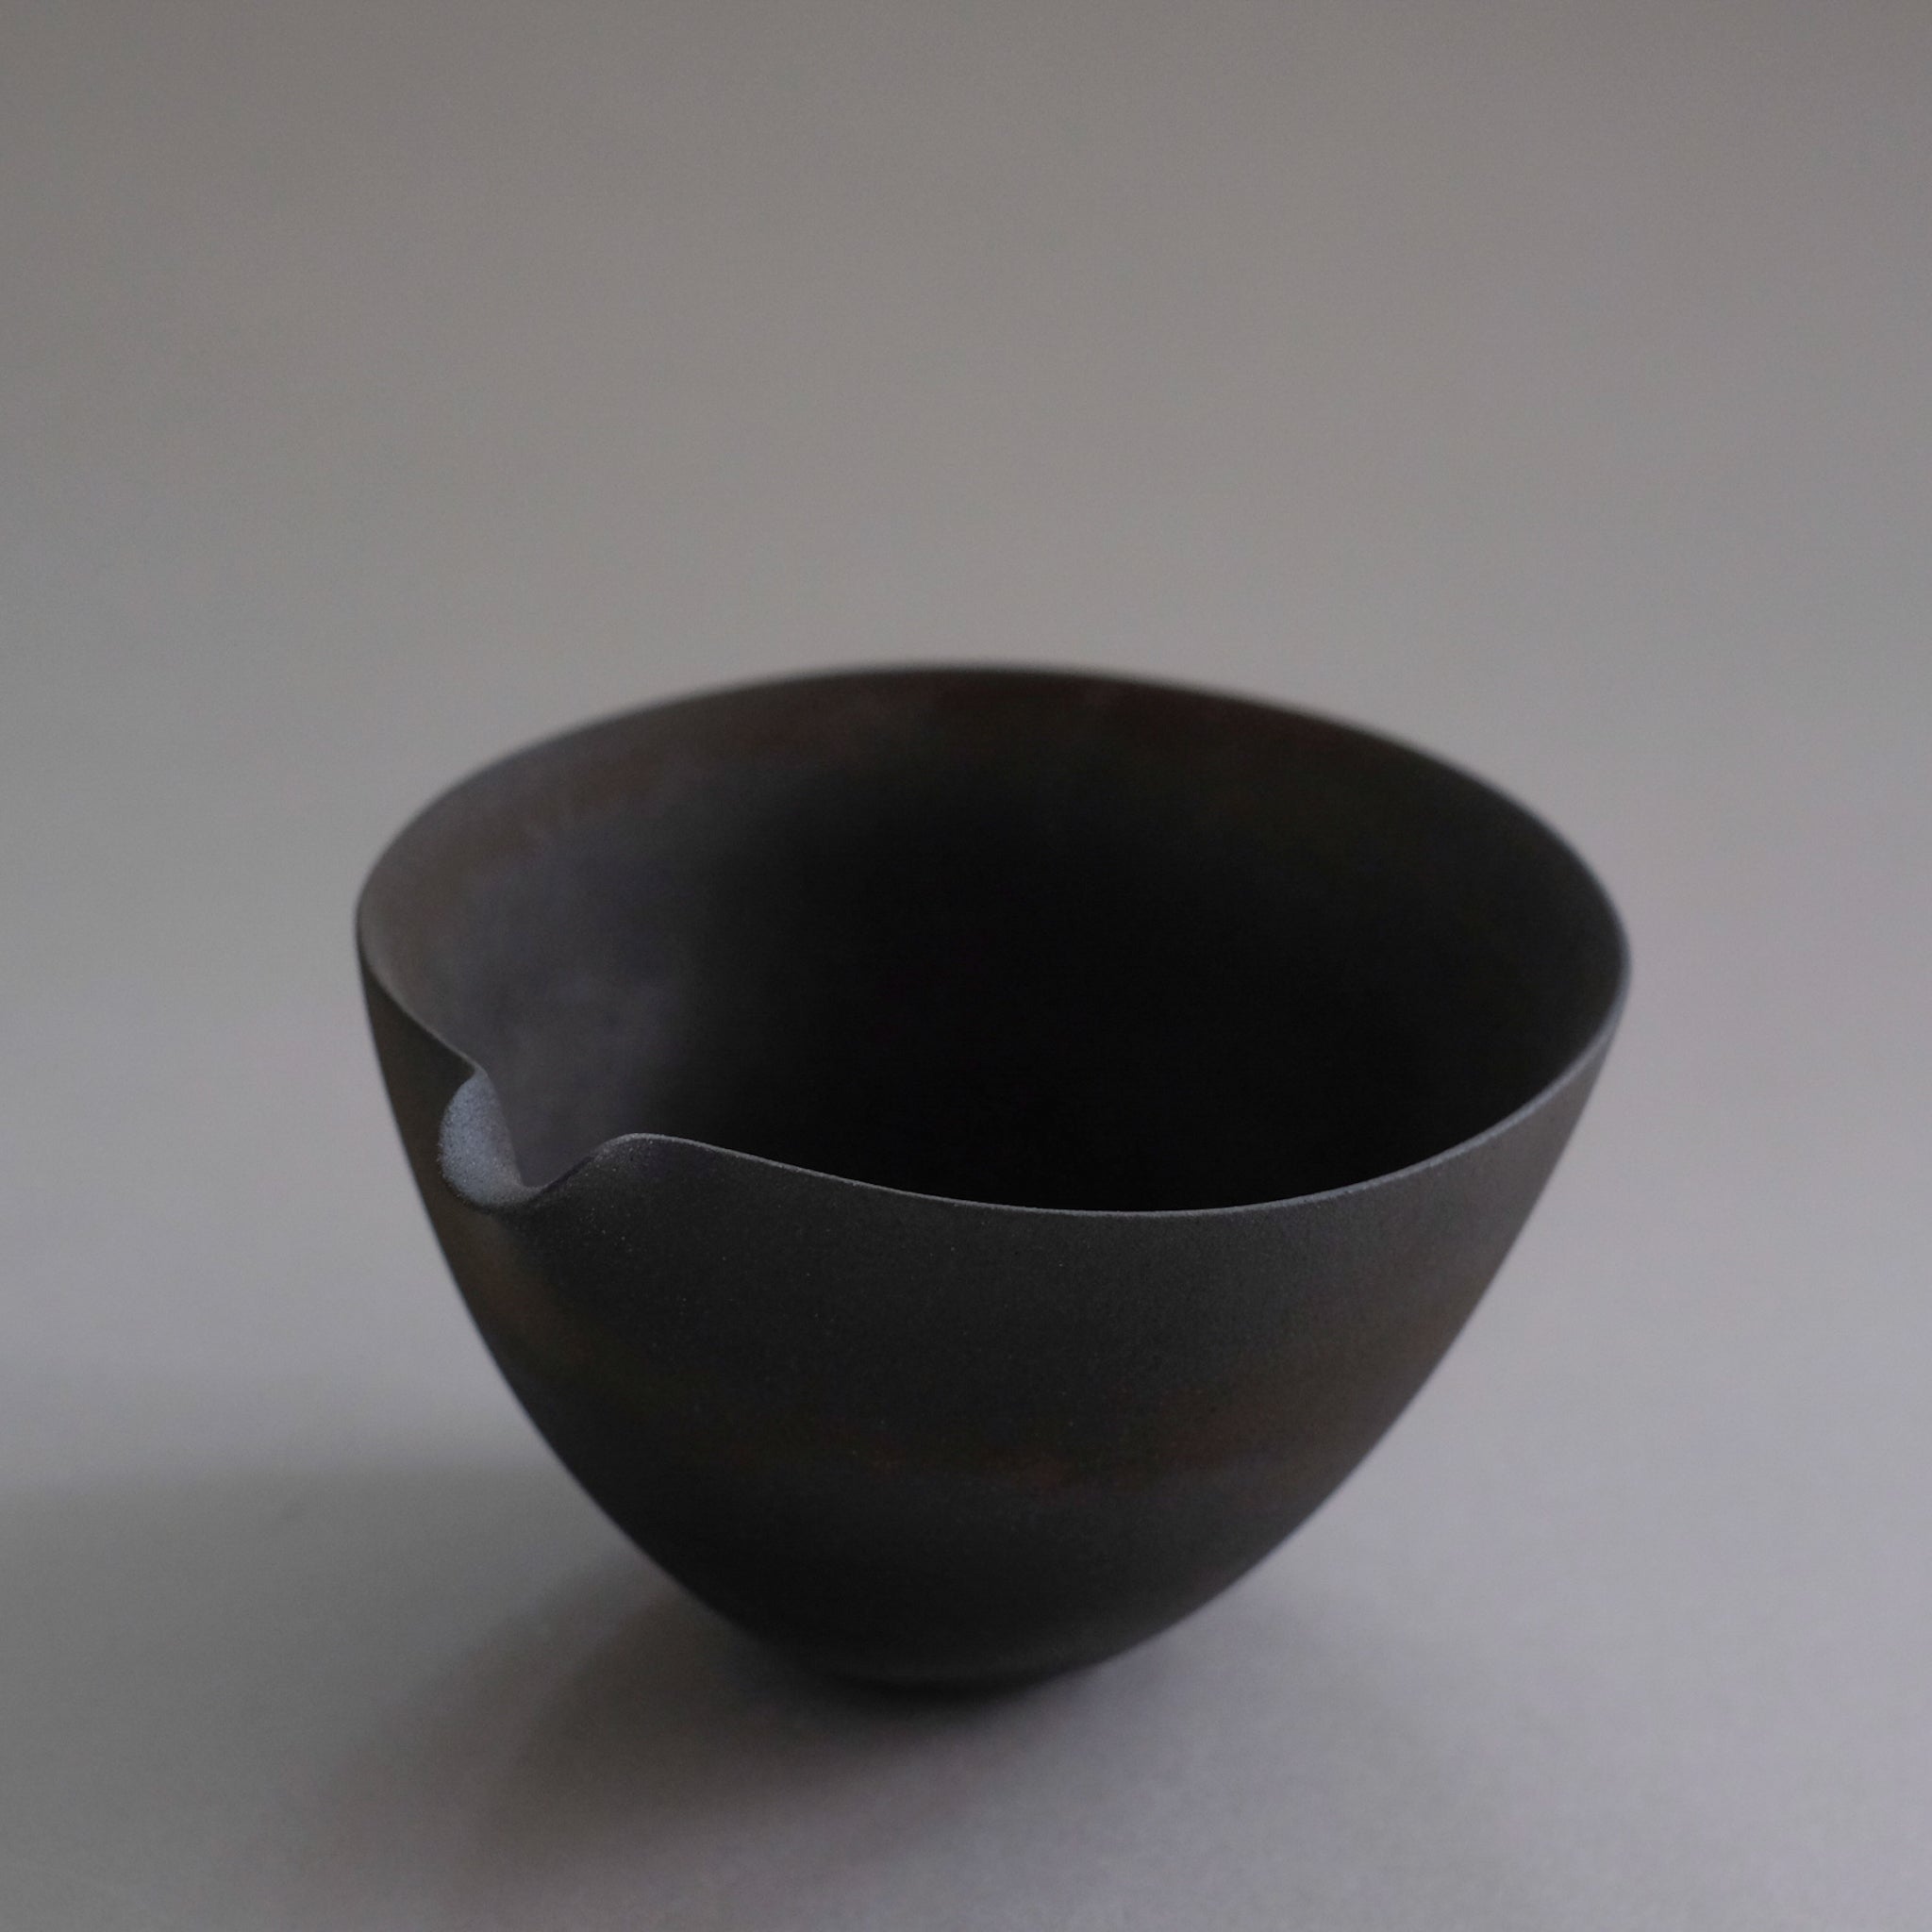 打田翠   炭化焼締 片口  Midori Uchida  Carbonization firing lipped bowl (MU28)